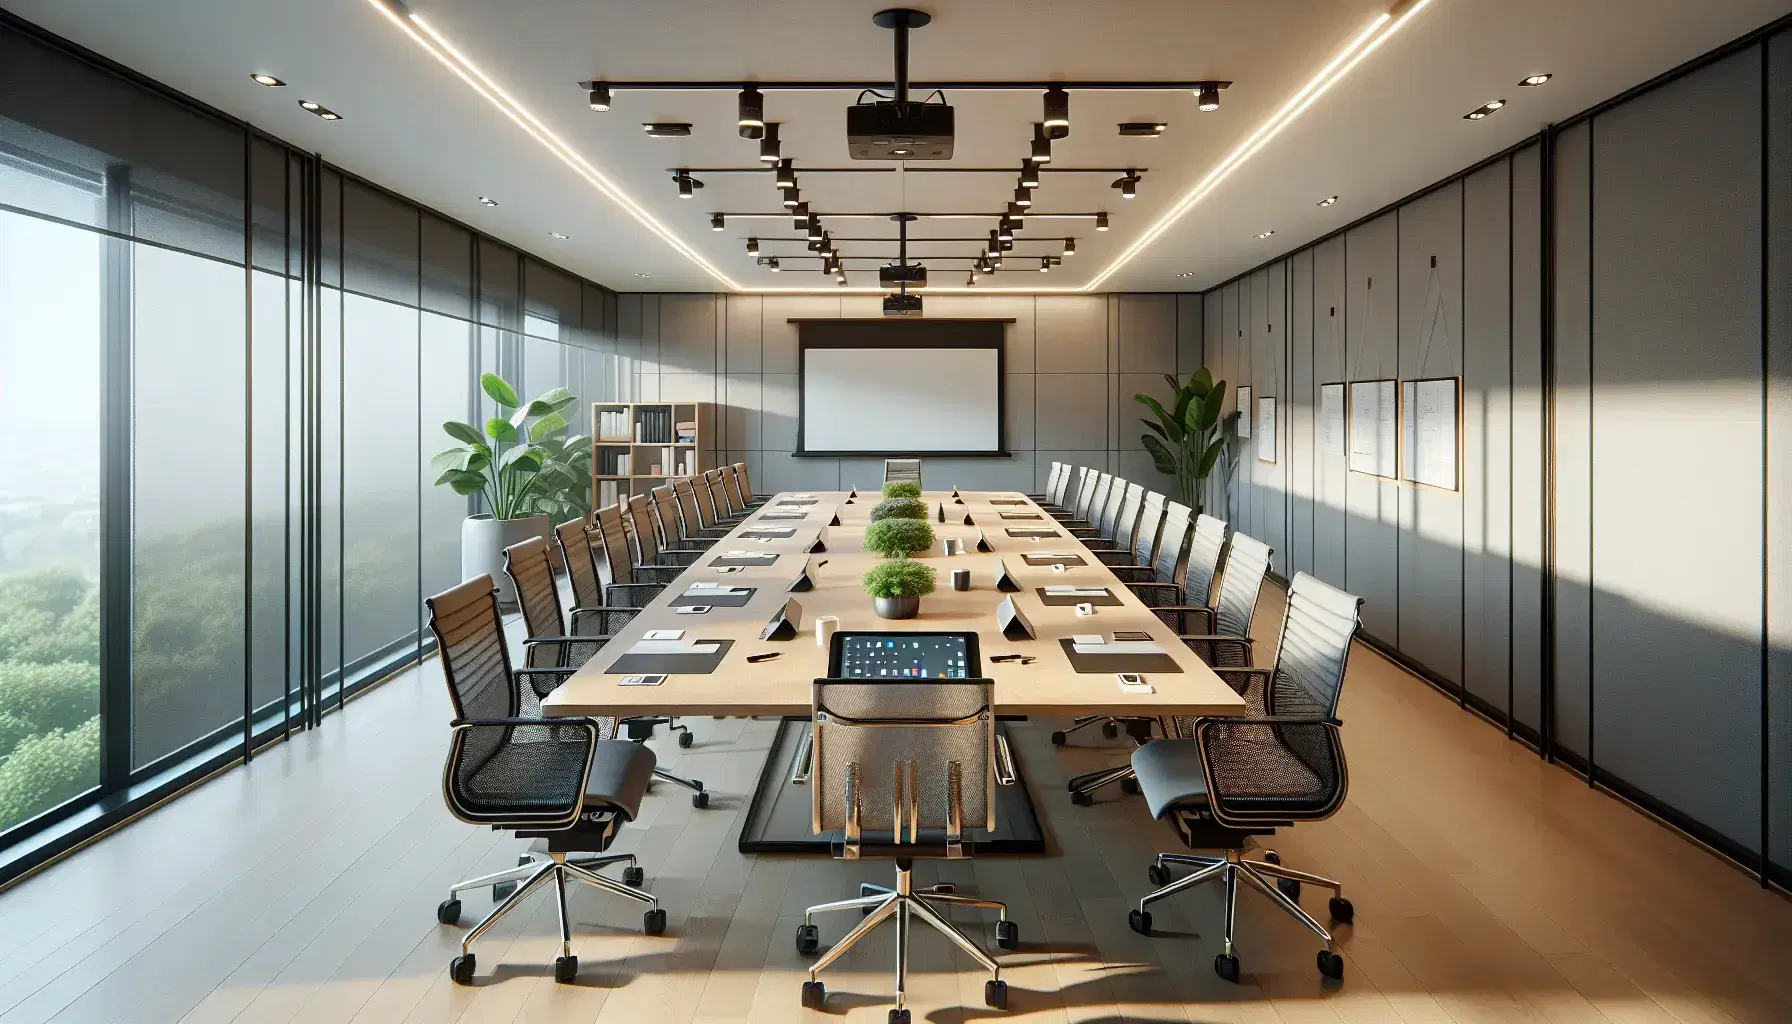 Sala de reuniones moderna con mesa de madera, sillas ergonómicas, dispositivos electrónicos y pizarra blanca, iluminada natural y artificialmente.